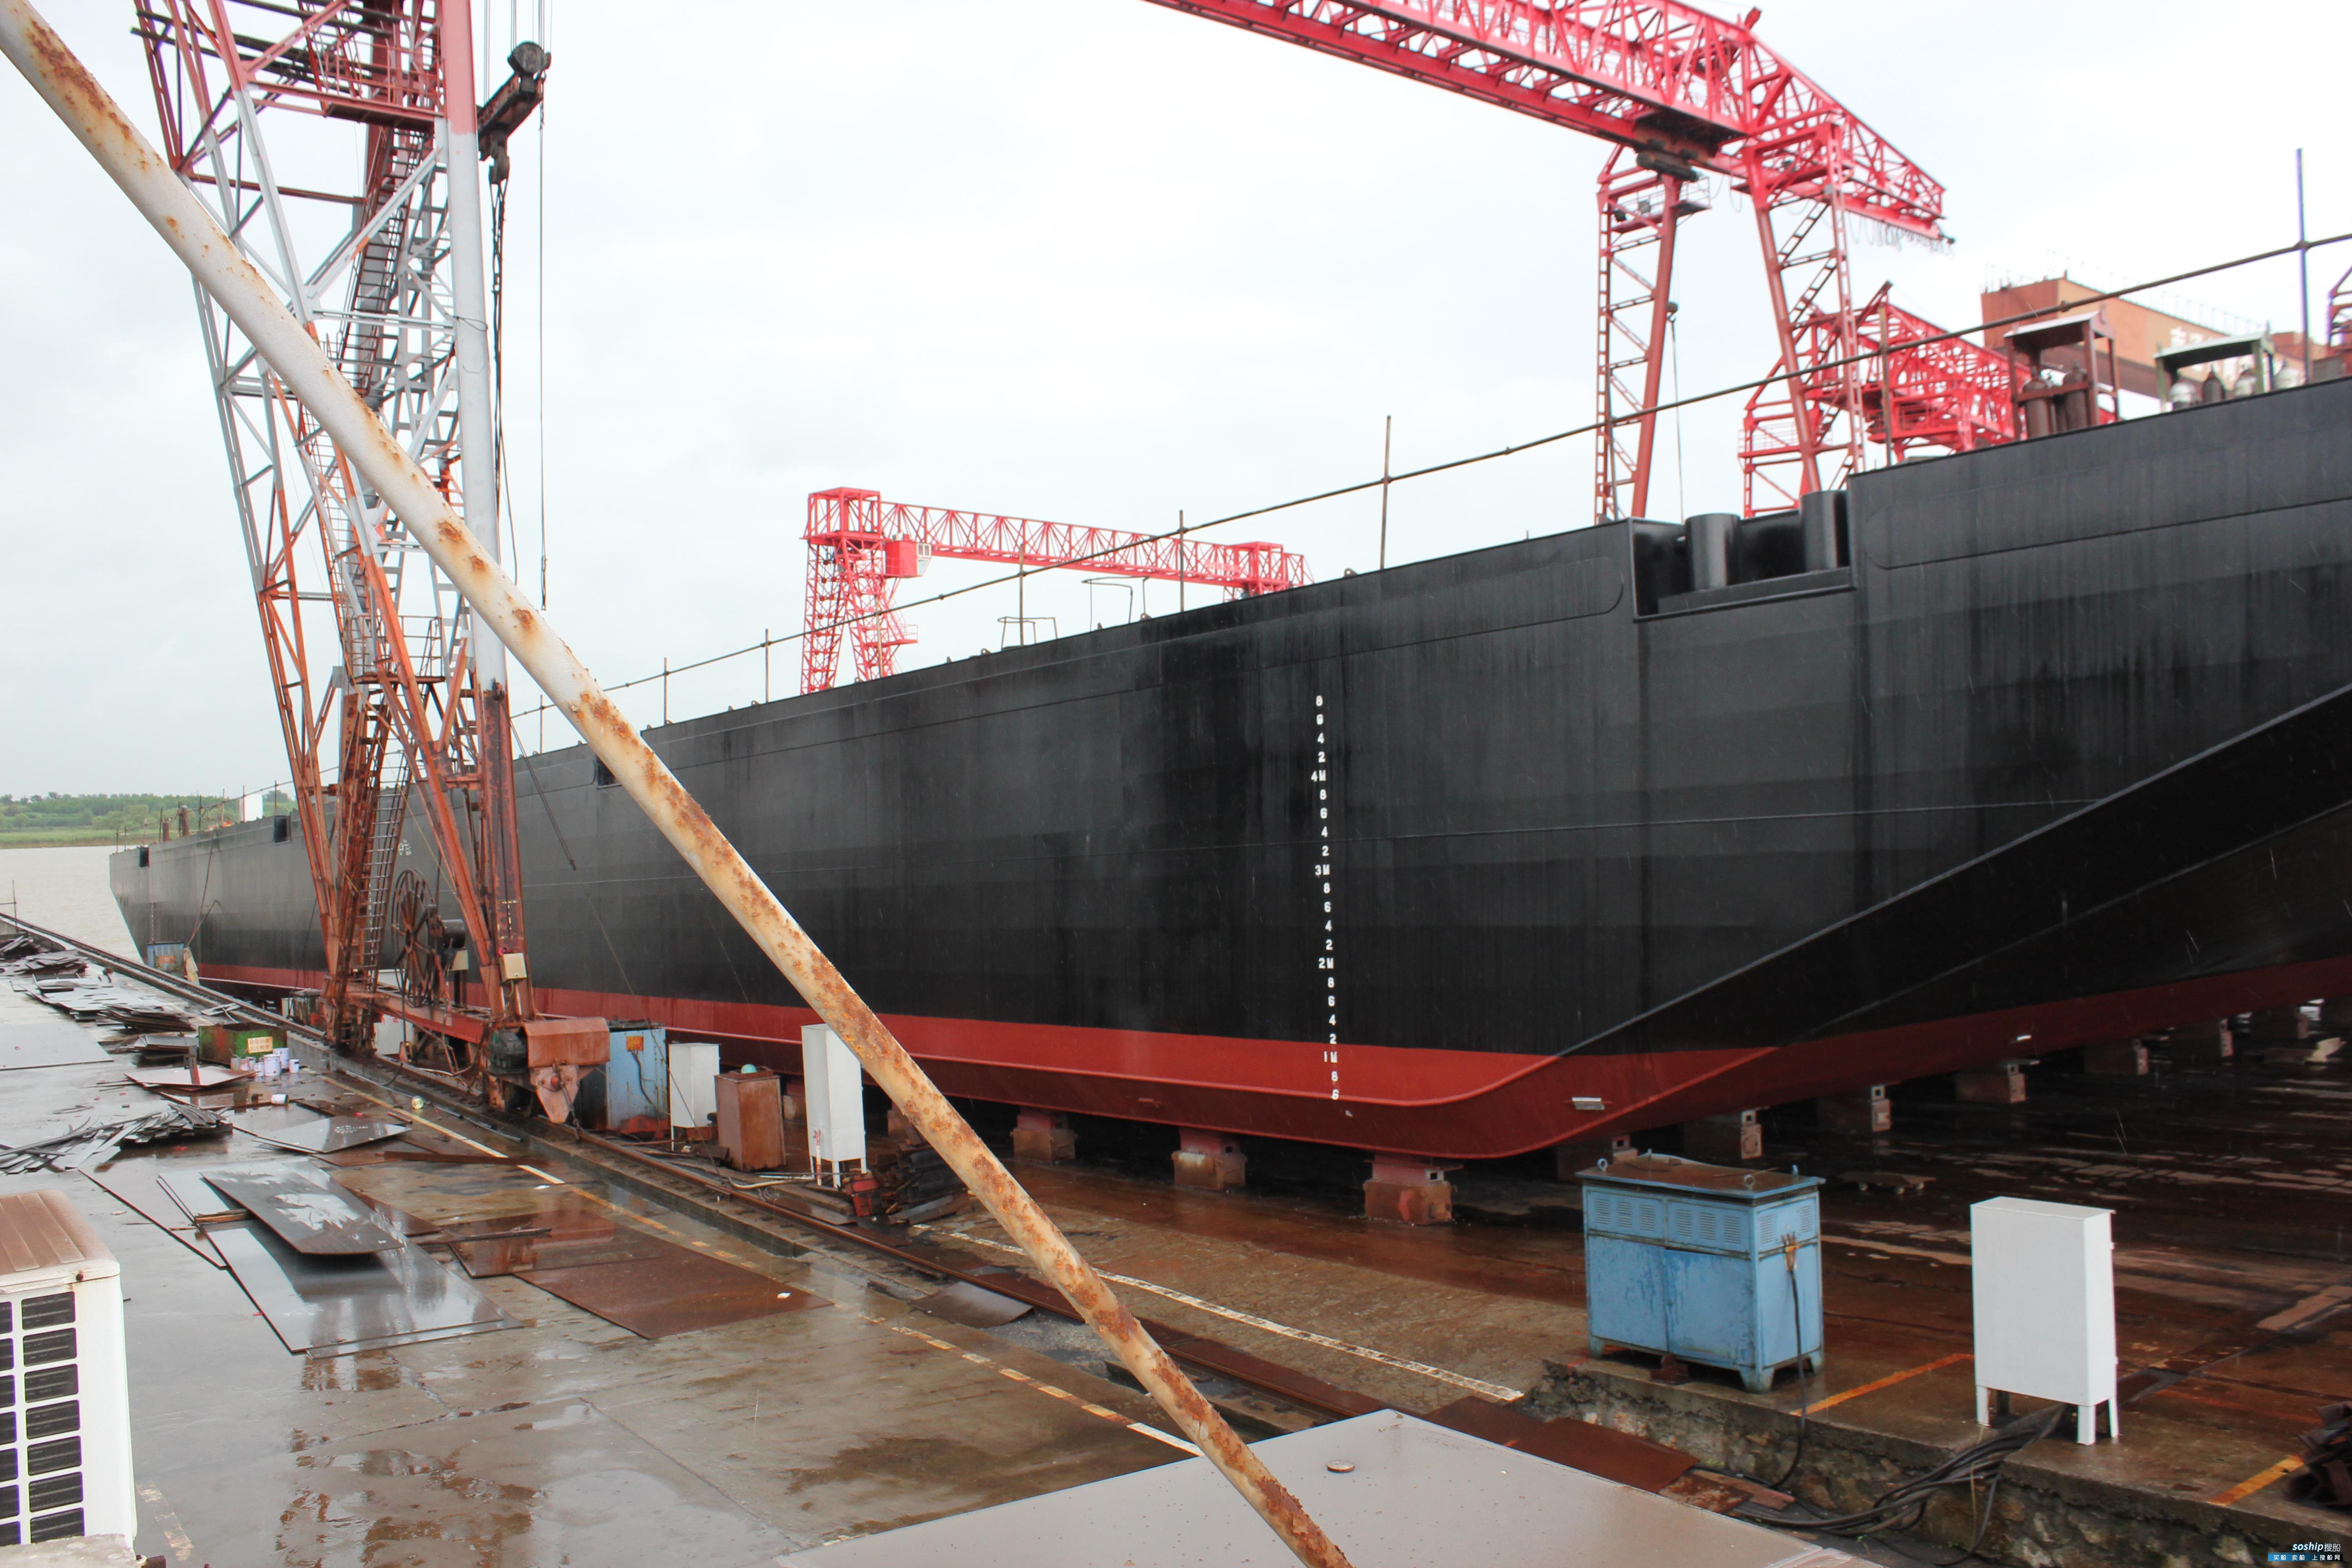 武汉甲板驳出售 出售8100吨甲板驳